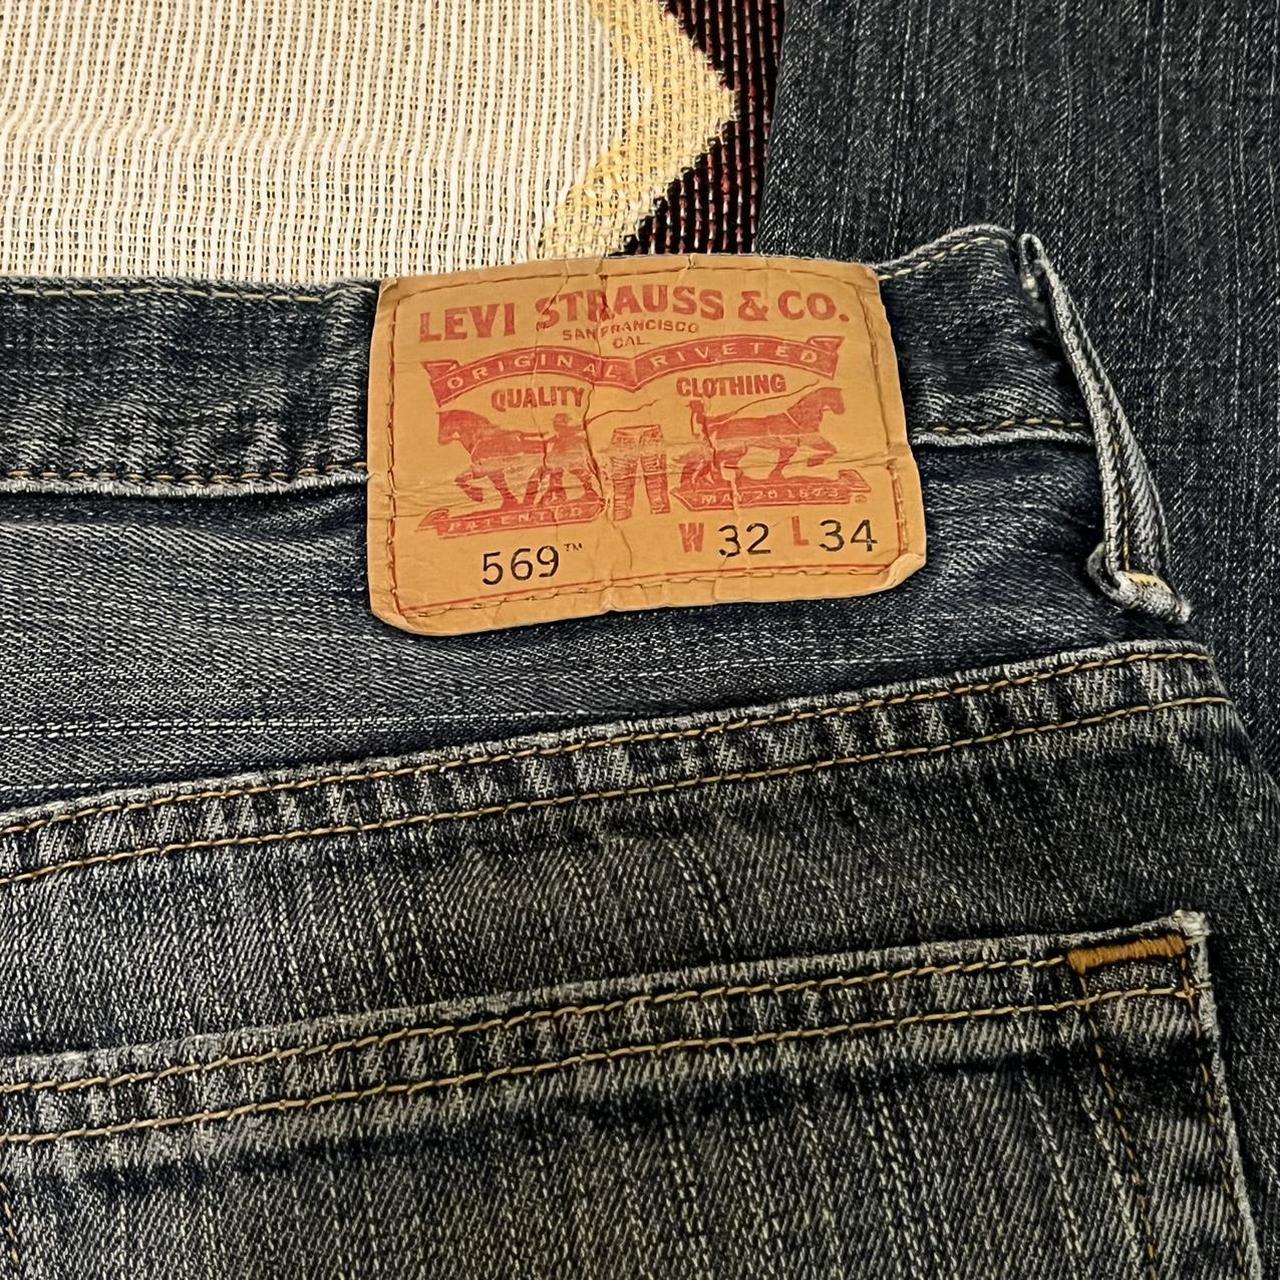 Levi’s 569 straight baggy cut jeans size 32W 34L.... - Depop